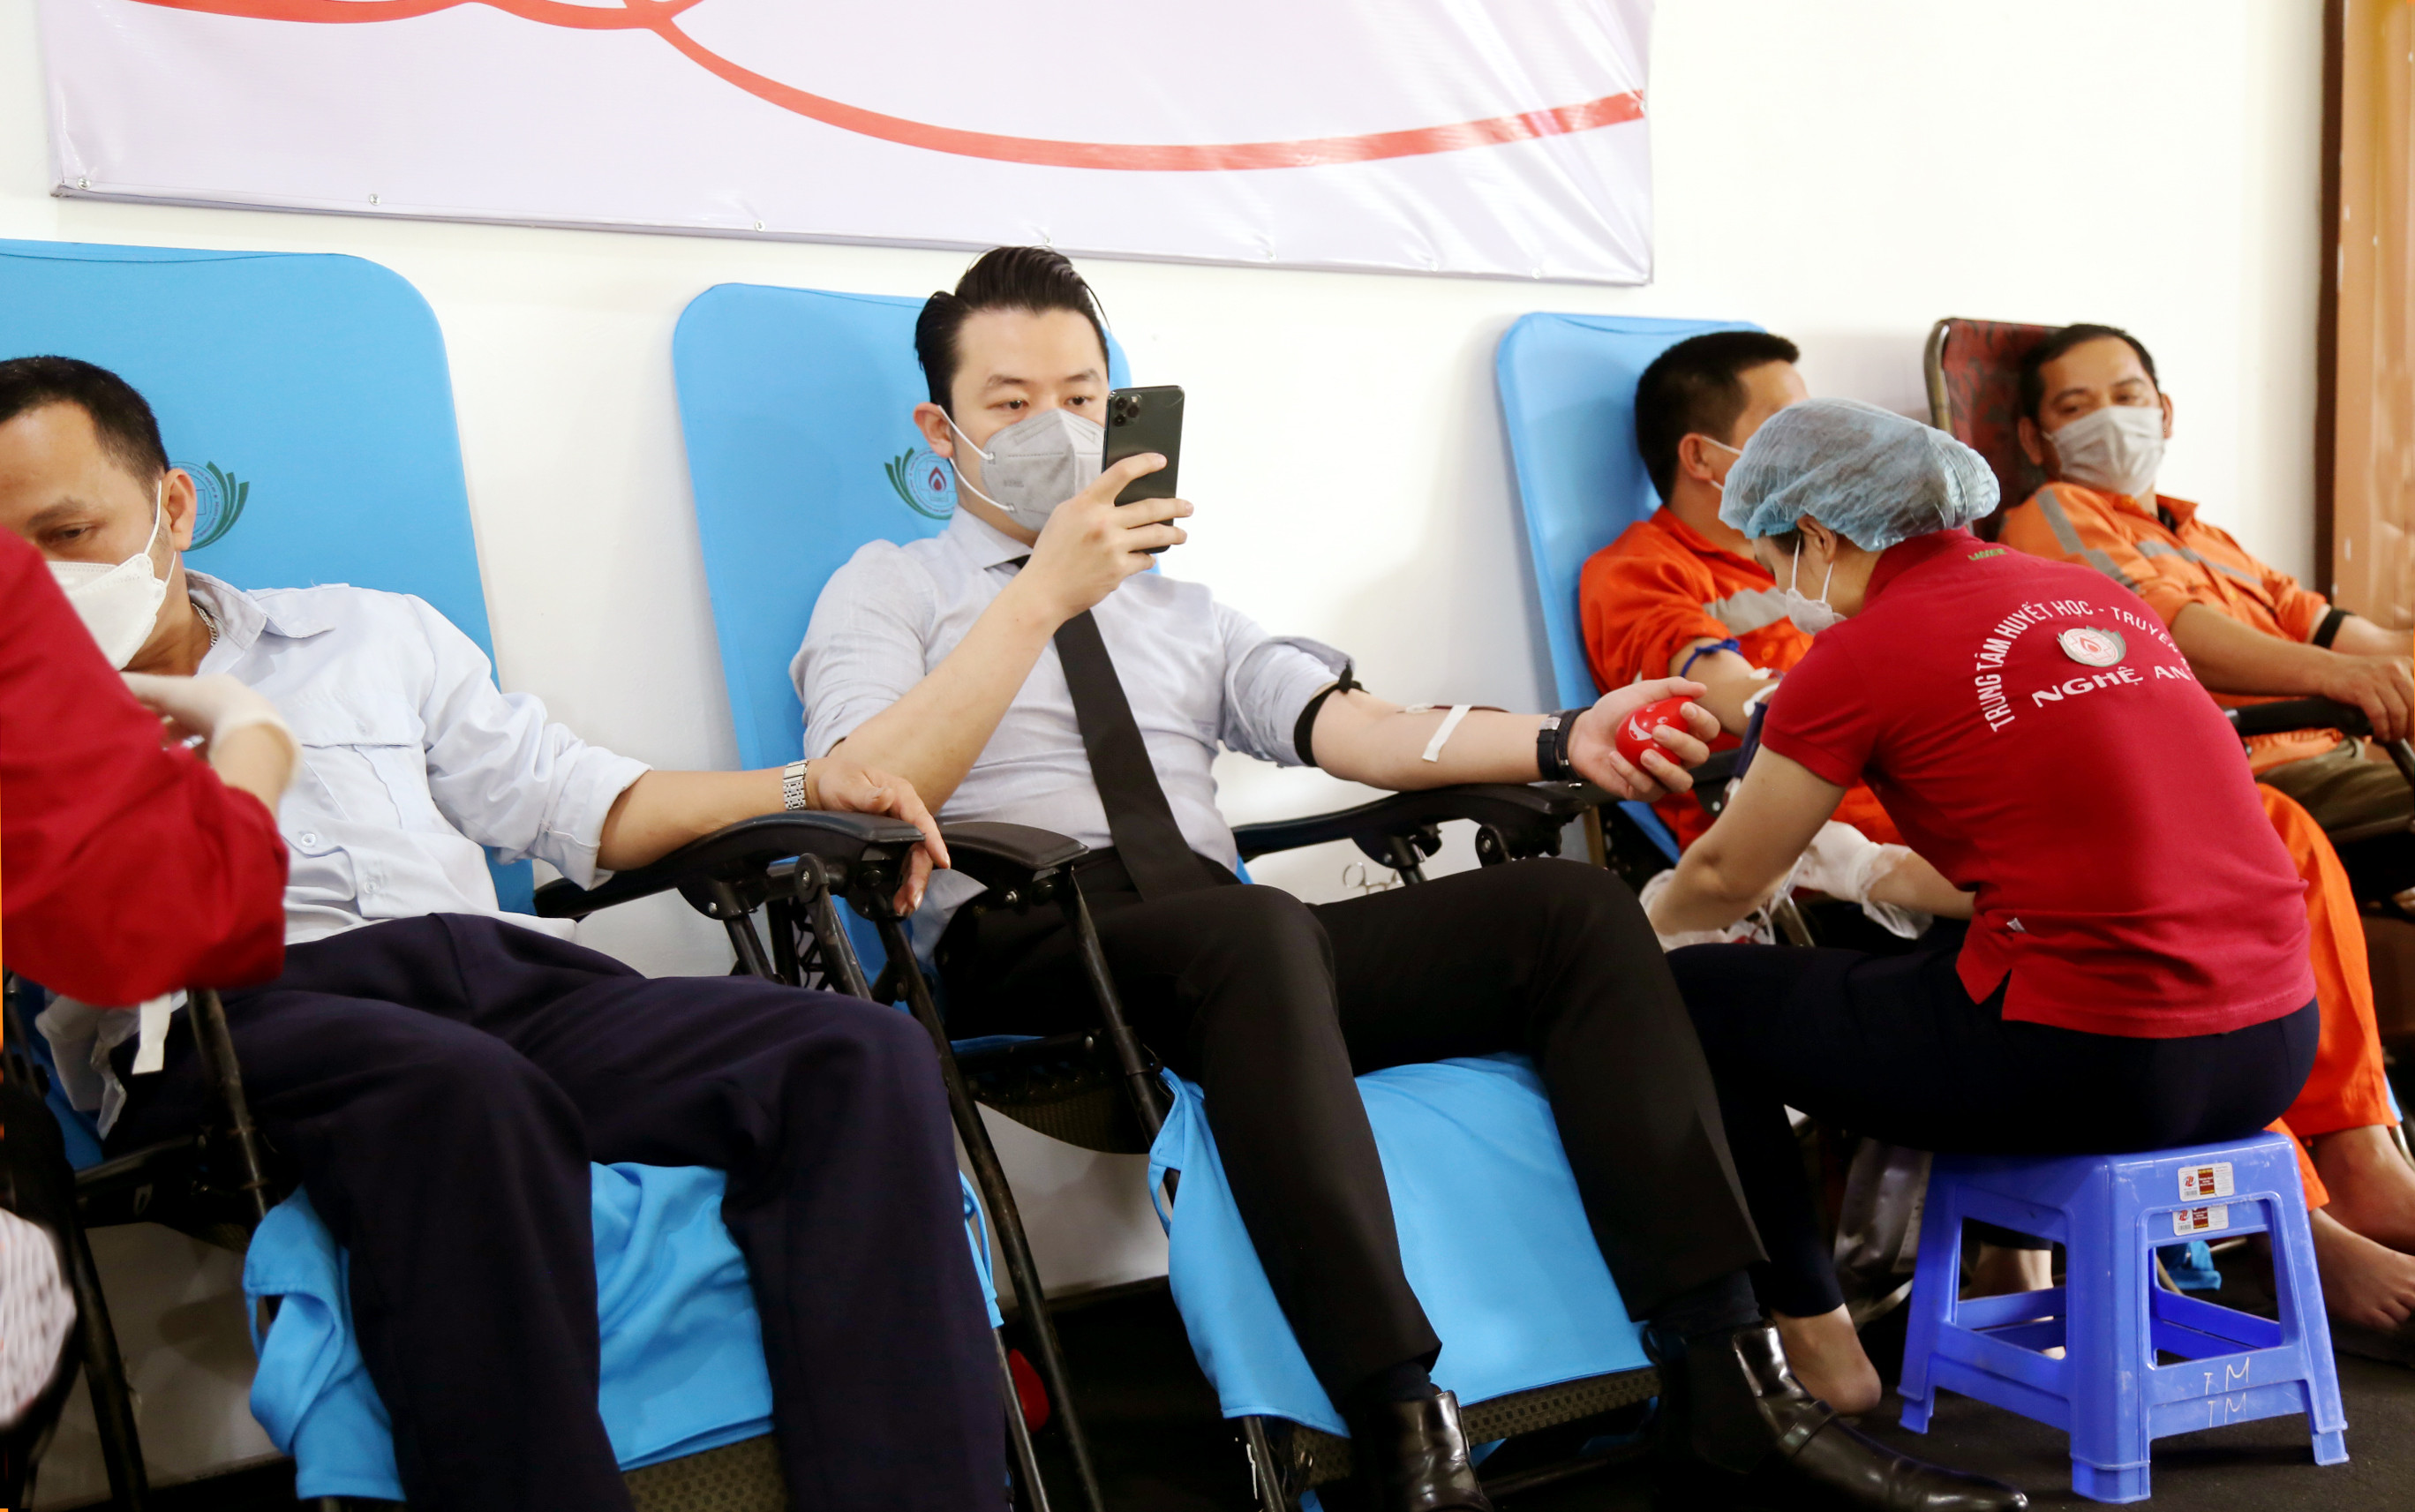 Giám đốc Công ty CP Xi măng Sông Lam - Hoàng Minh Tuấn (giữa) cũng tham gia hiến máu cứu người. Ảnh Hào Nguyễn